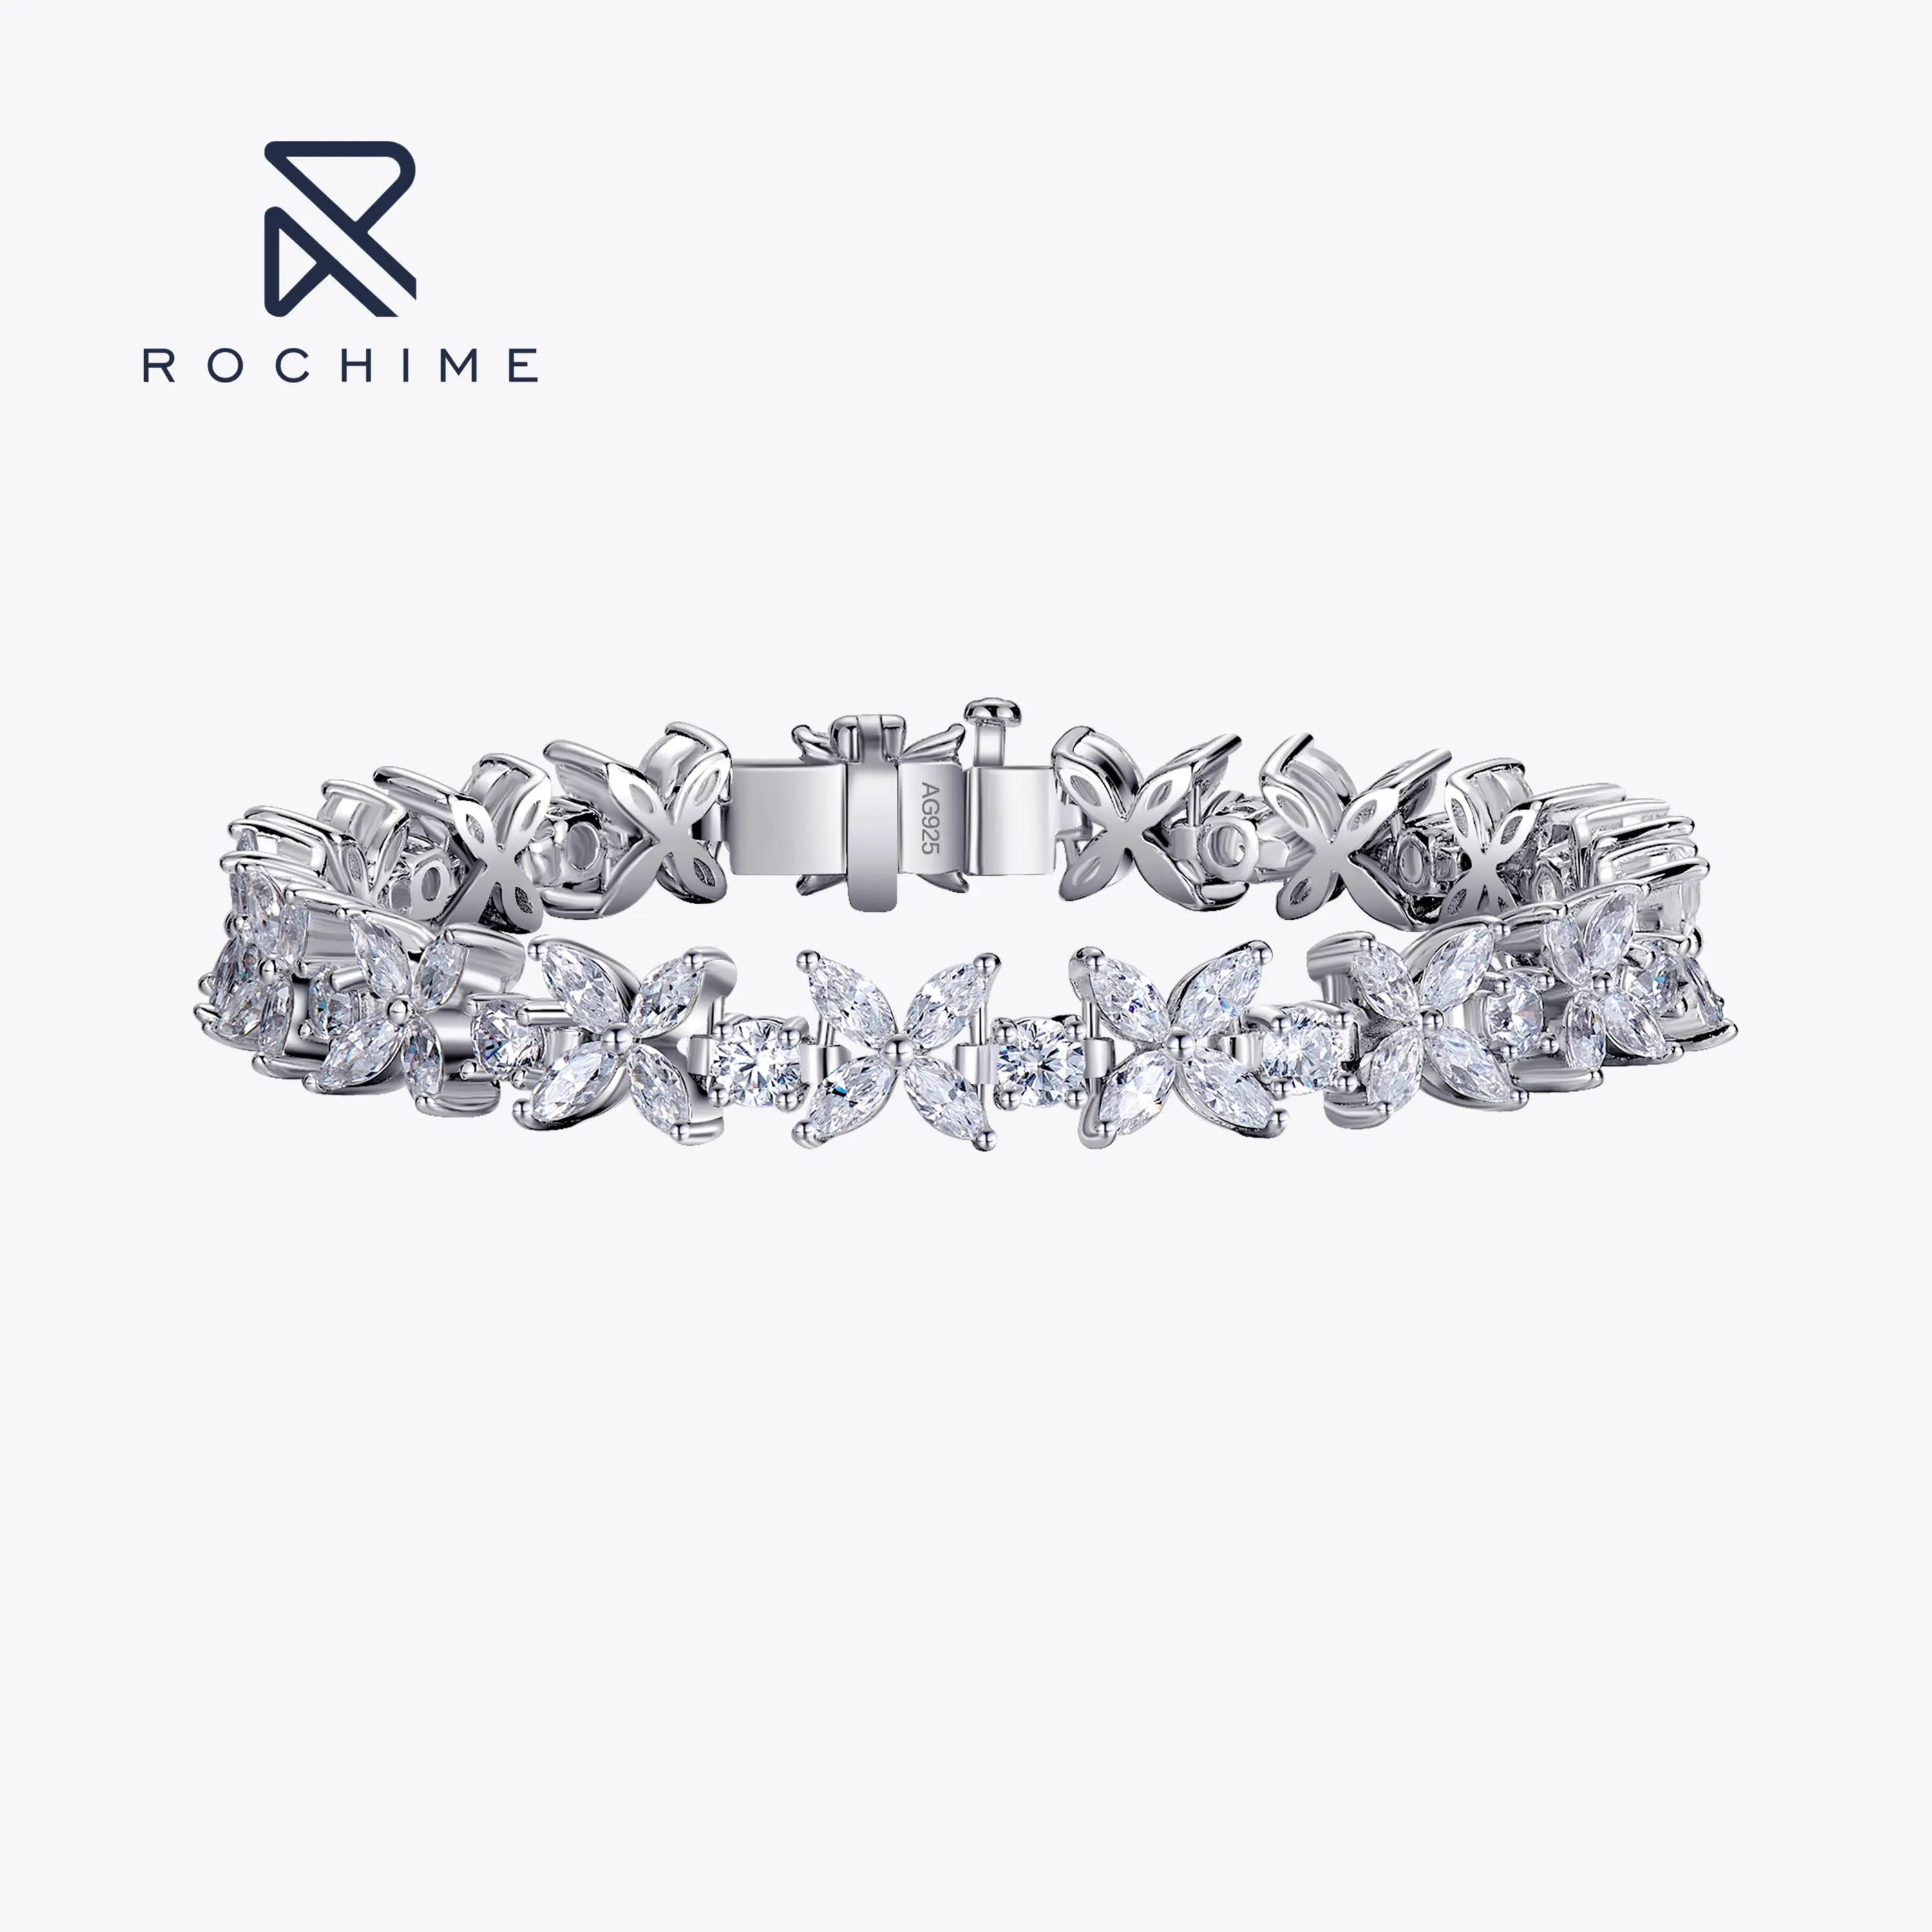 Rochime elegante marquise cut CZ bracciale con diamanti 925 gioielli in argento sterling color oro bianco